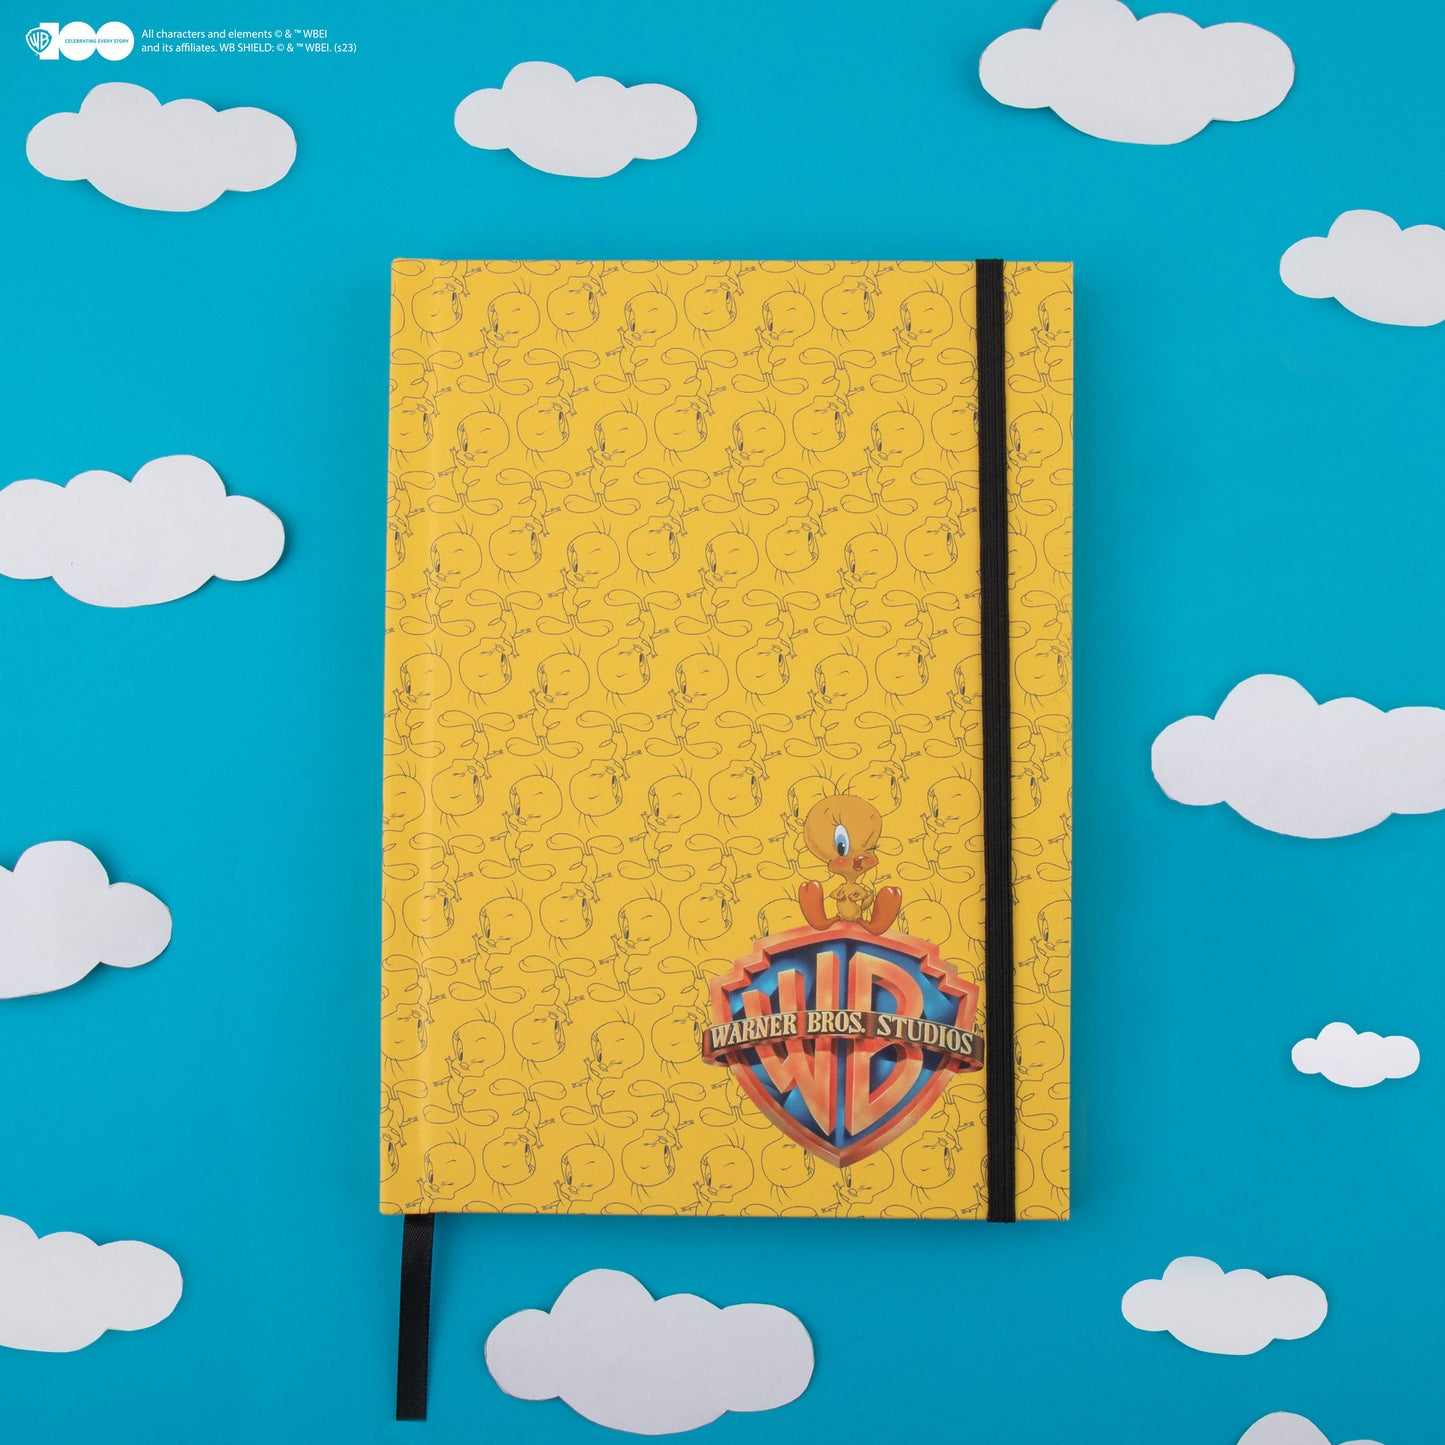 Warner Bros 100 Jahre "Tweety" Notizbuch 200 Seiten Hardcover Linienlayout DIN A5